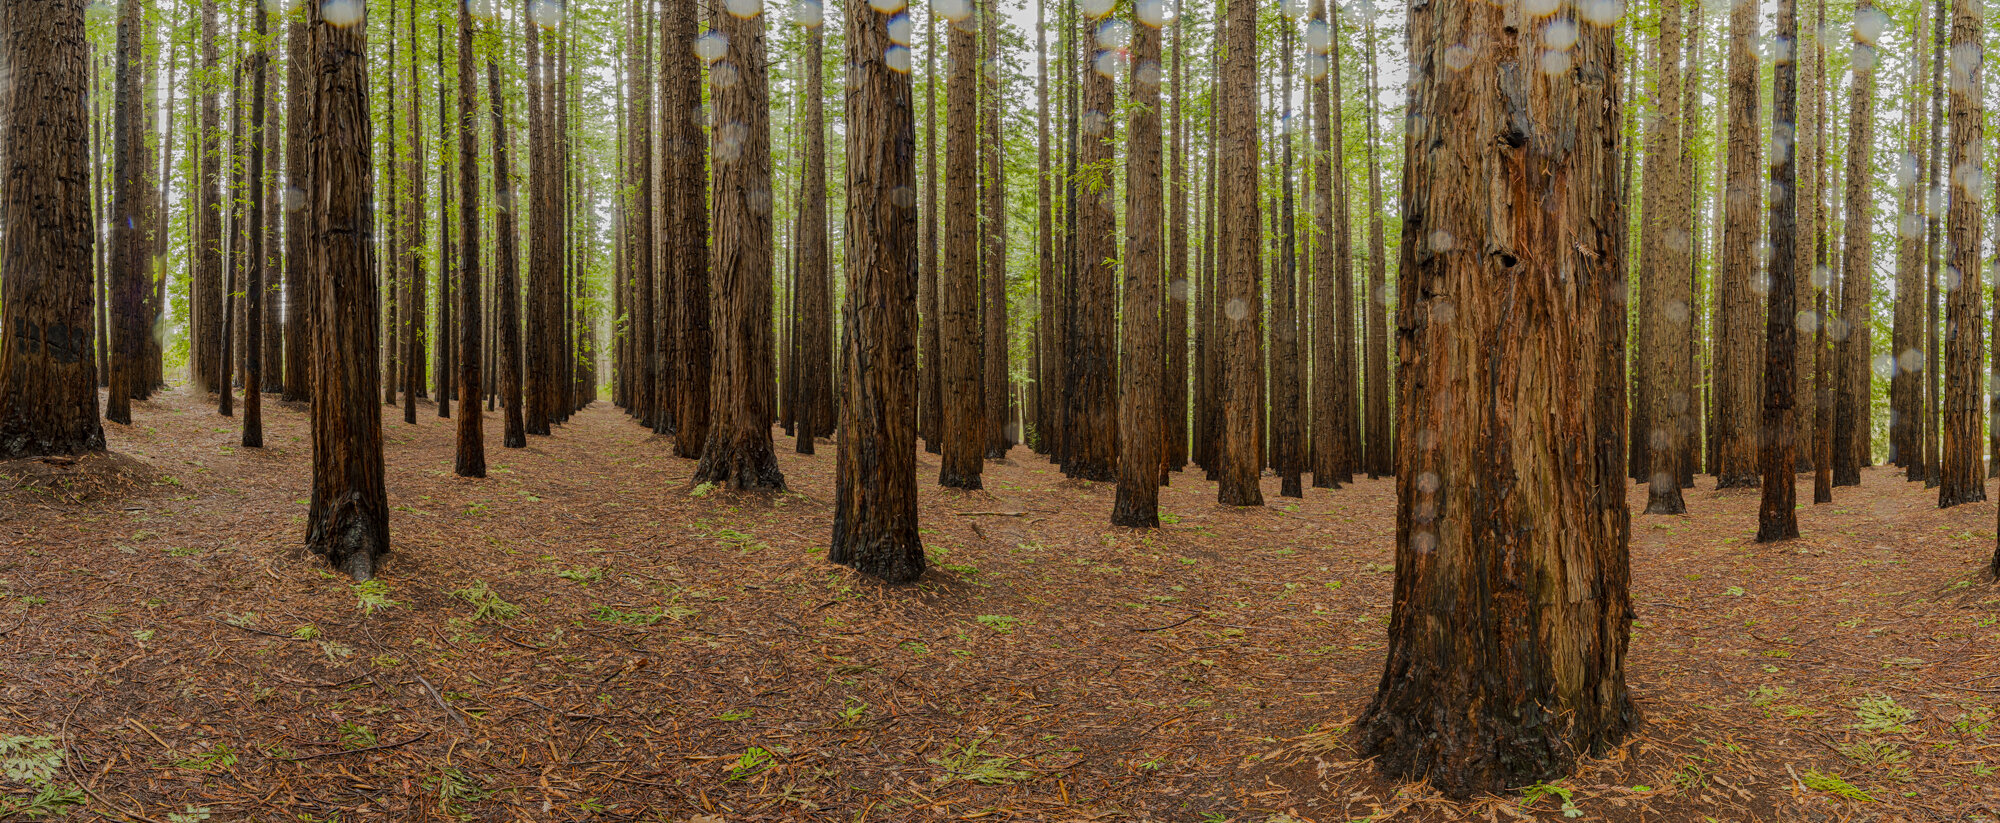 Redwood forest, Warburton